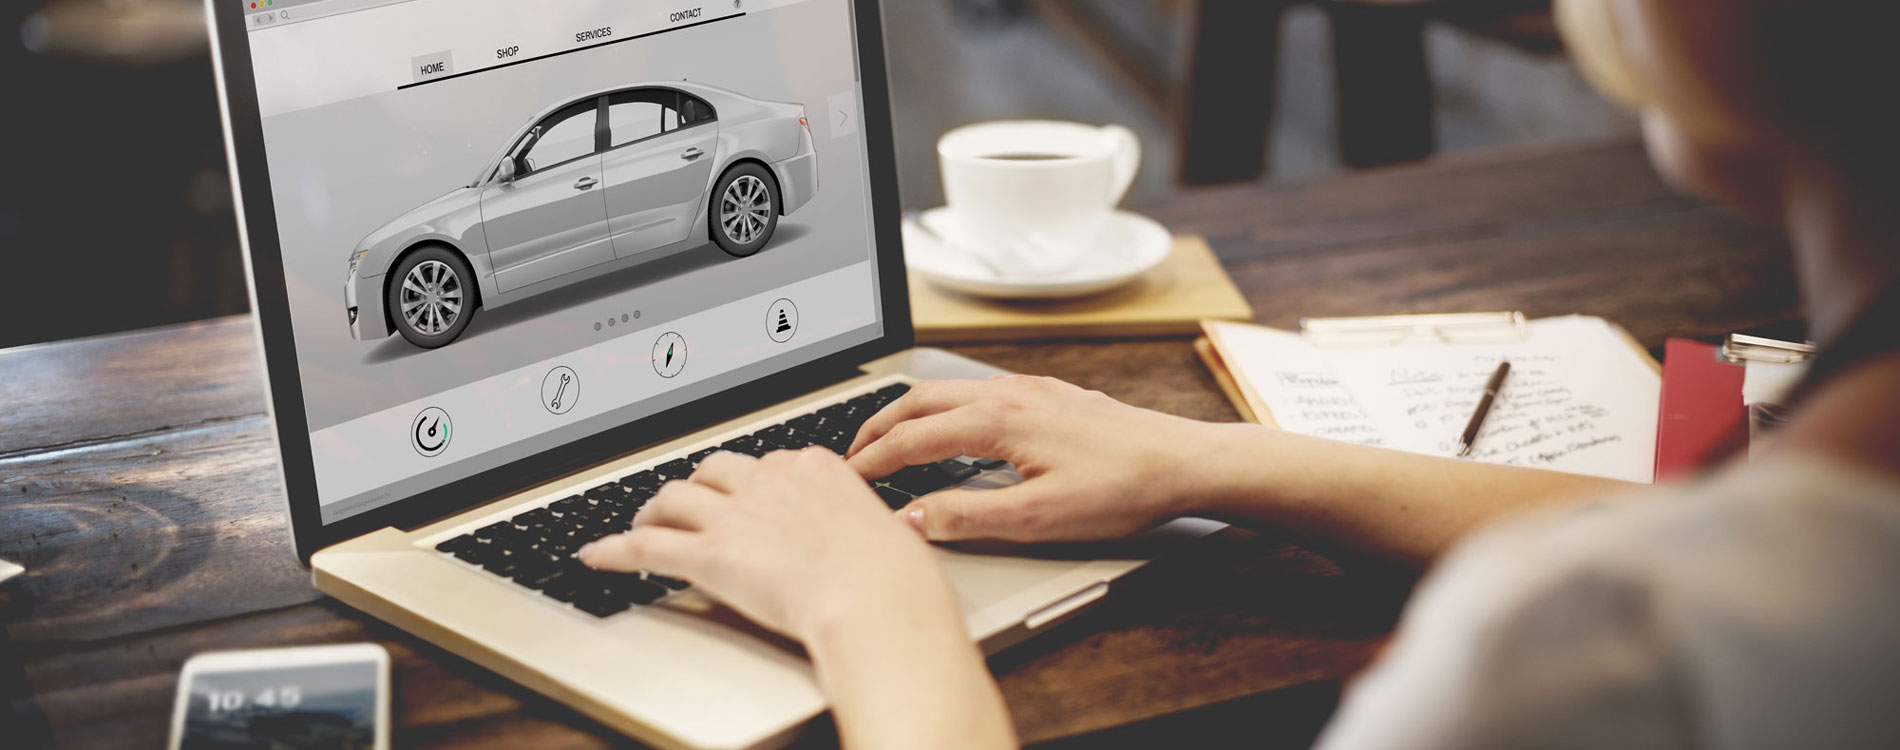 Best Automotive Digital Marketing Tips - Woobound